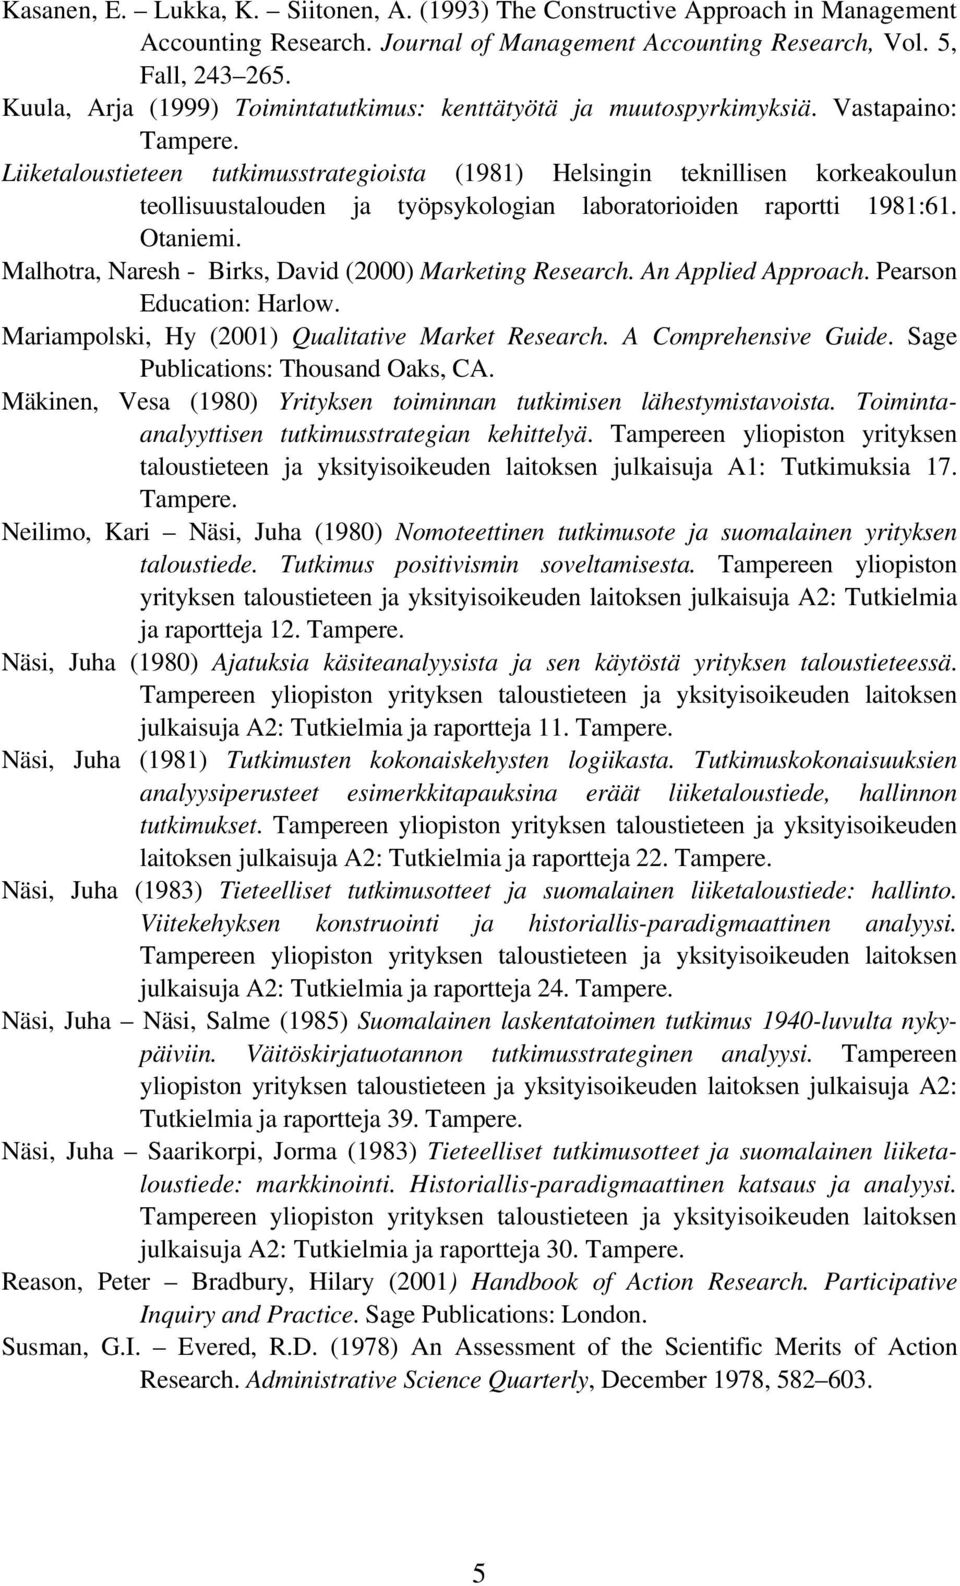 Liiketaloustieteen tutkimusstrategioista (1981) Helsingin teknillisen korkeakoulun teollisuustalouden ja työpsykologian laboratorioiden raportti 1981:61. Otaniemi.